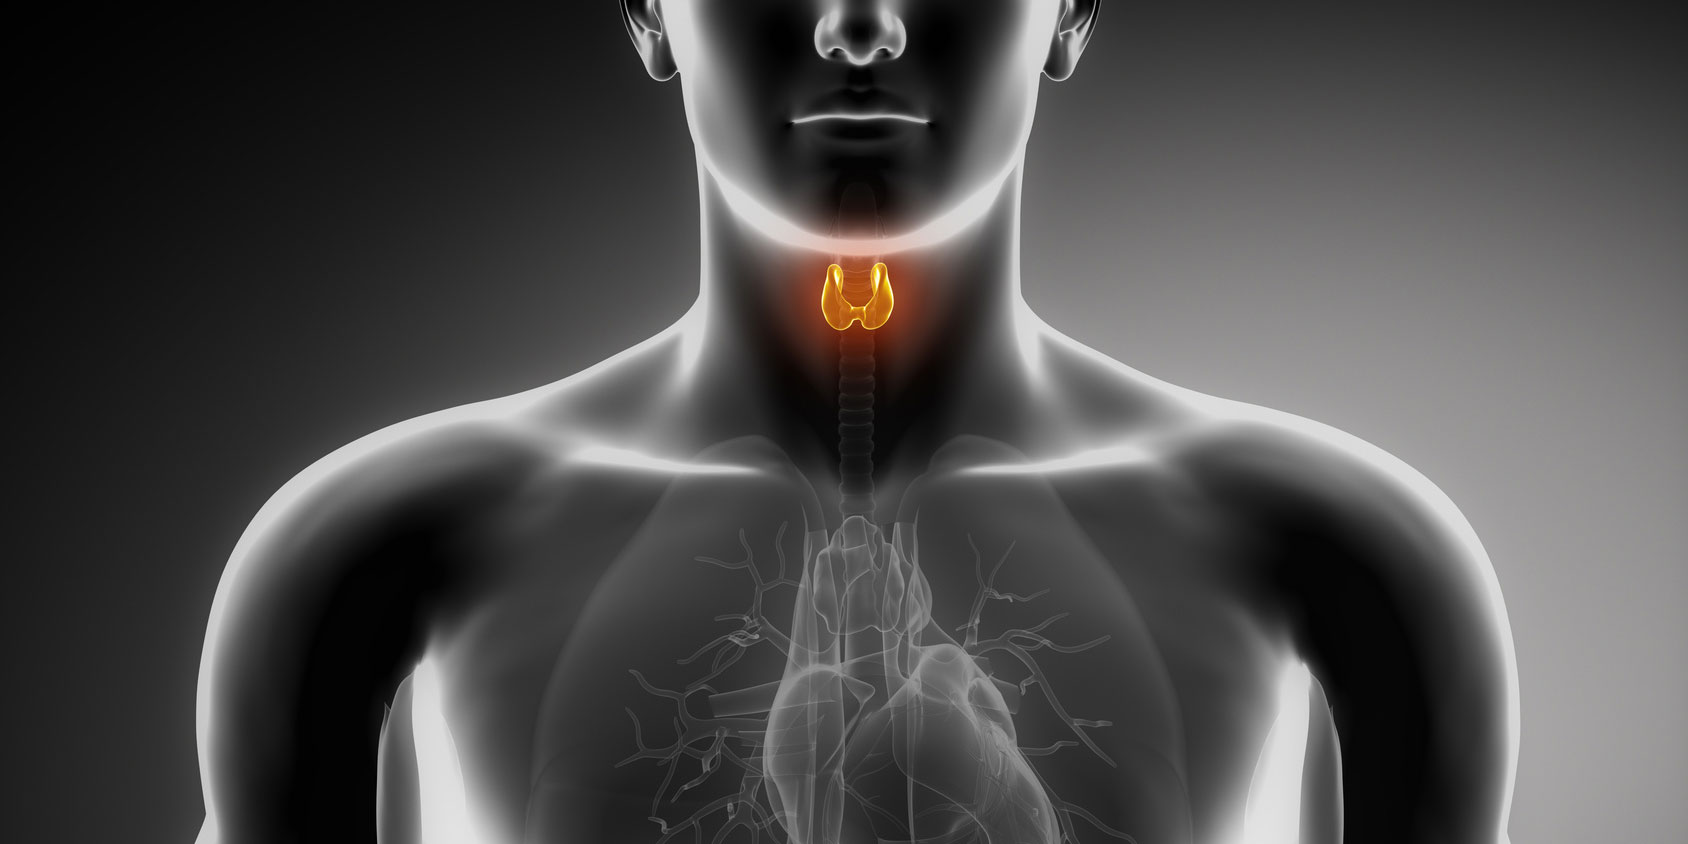 Natural Thyroid Medications at Risk